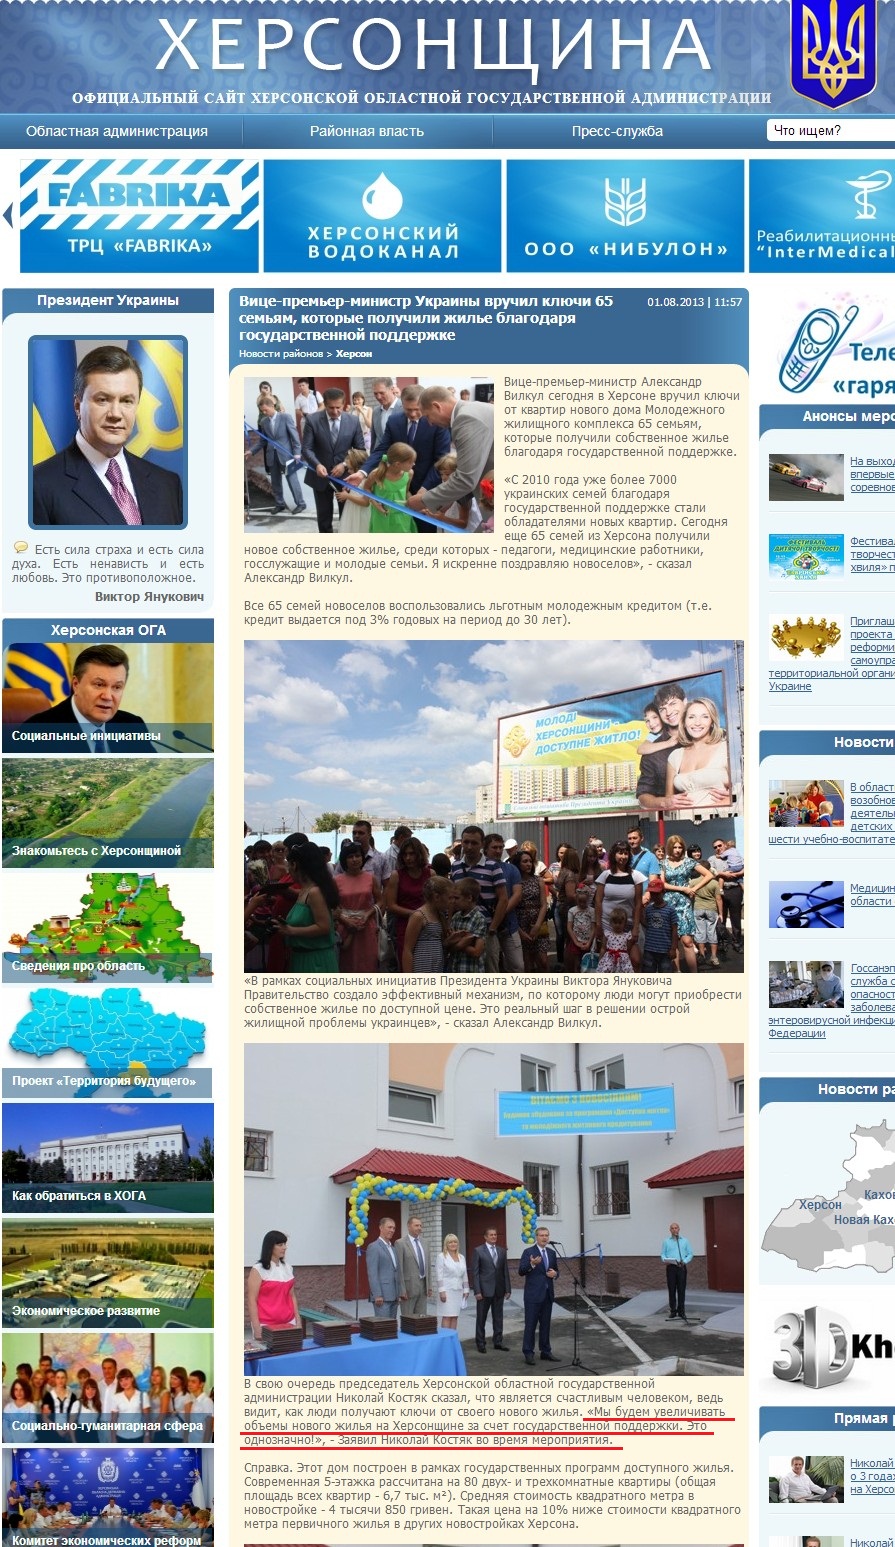 http://www.oda.kherson.ua/news/vice-premer-ministr-ukrainy-vruchil-klyuchi-65-semyam-kotorye-poluchili-jile-blagodarya-gosudarstven